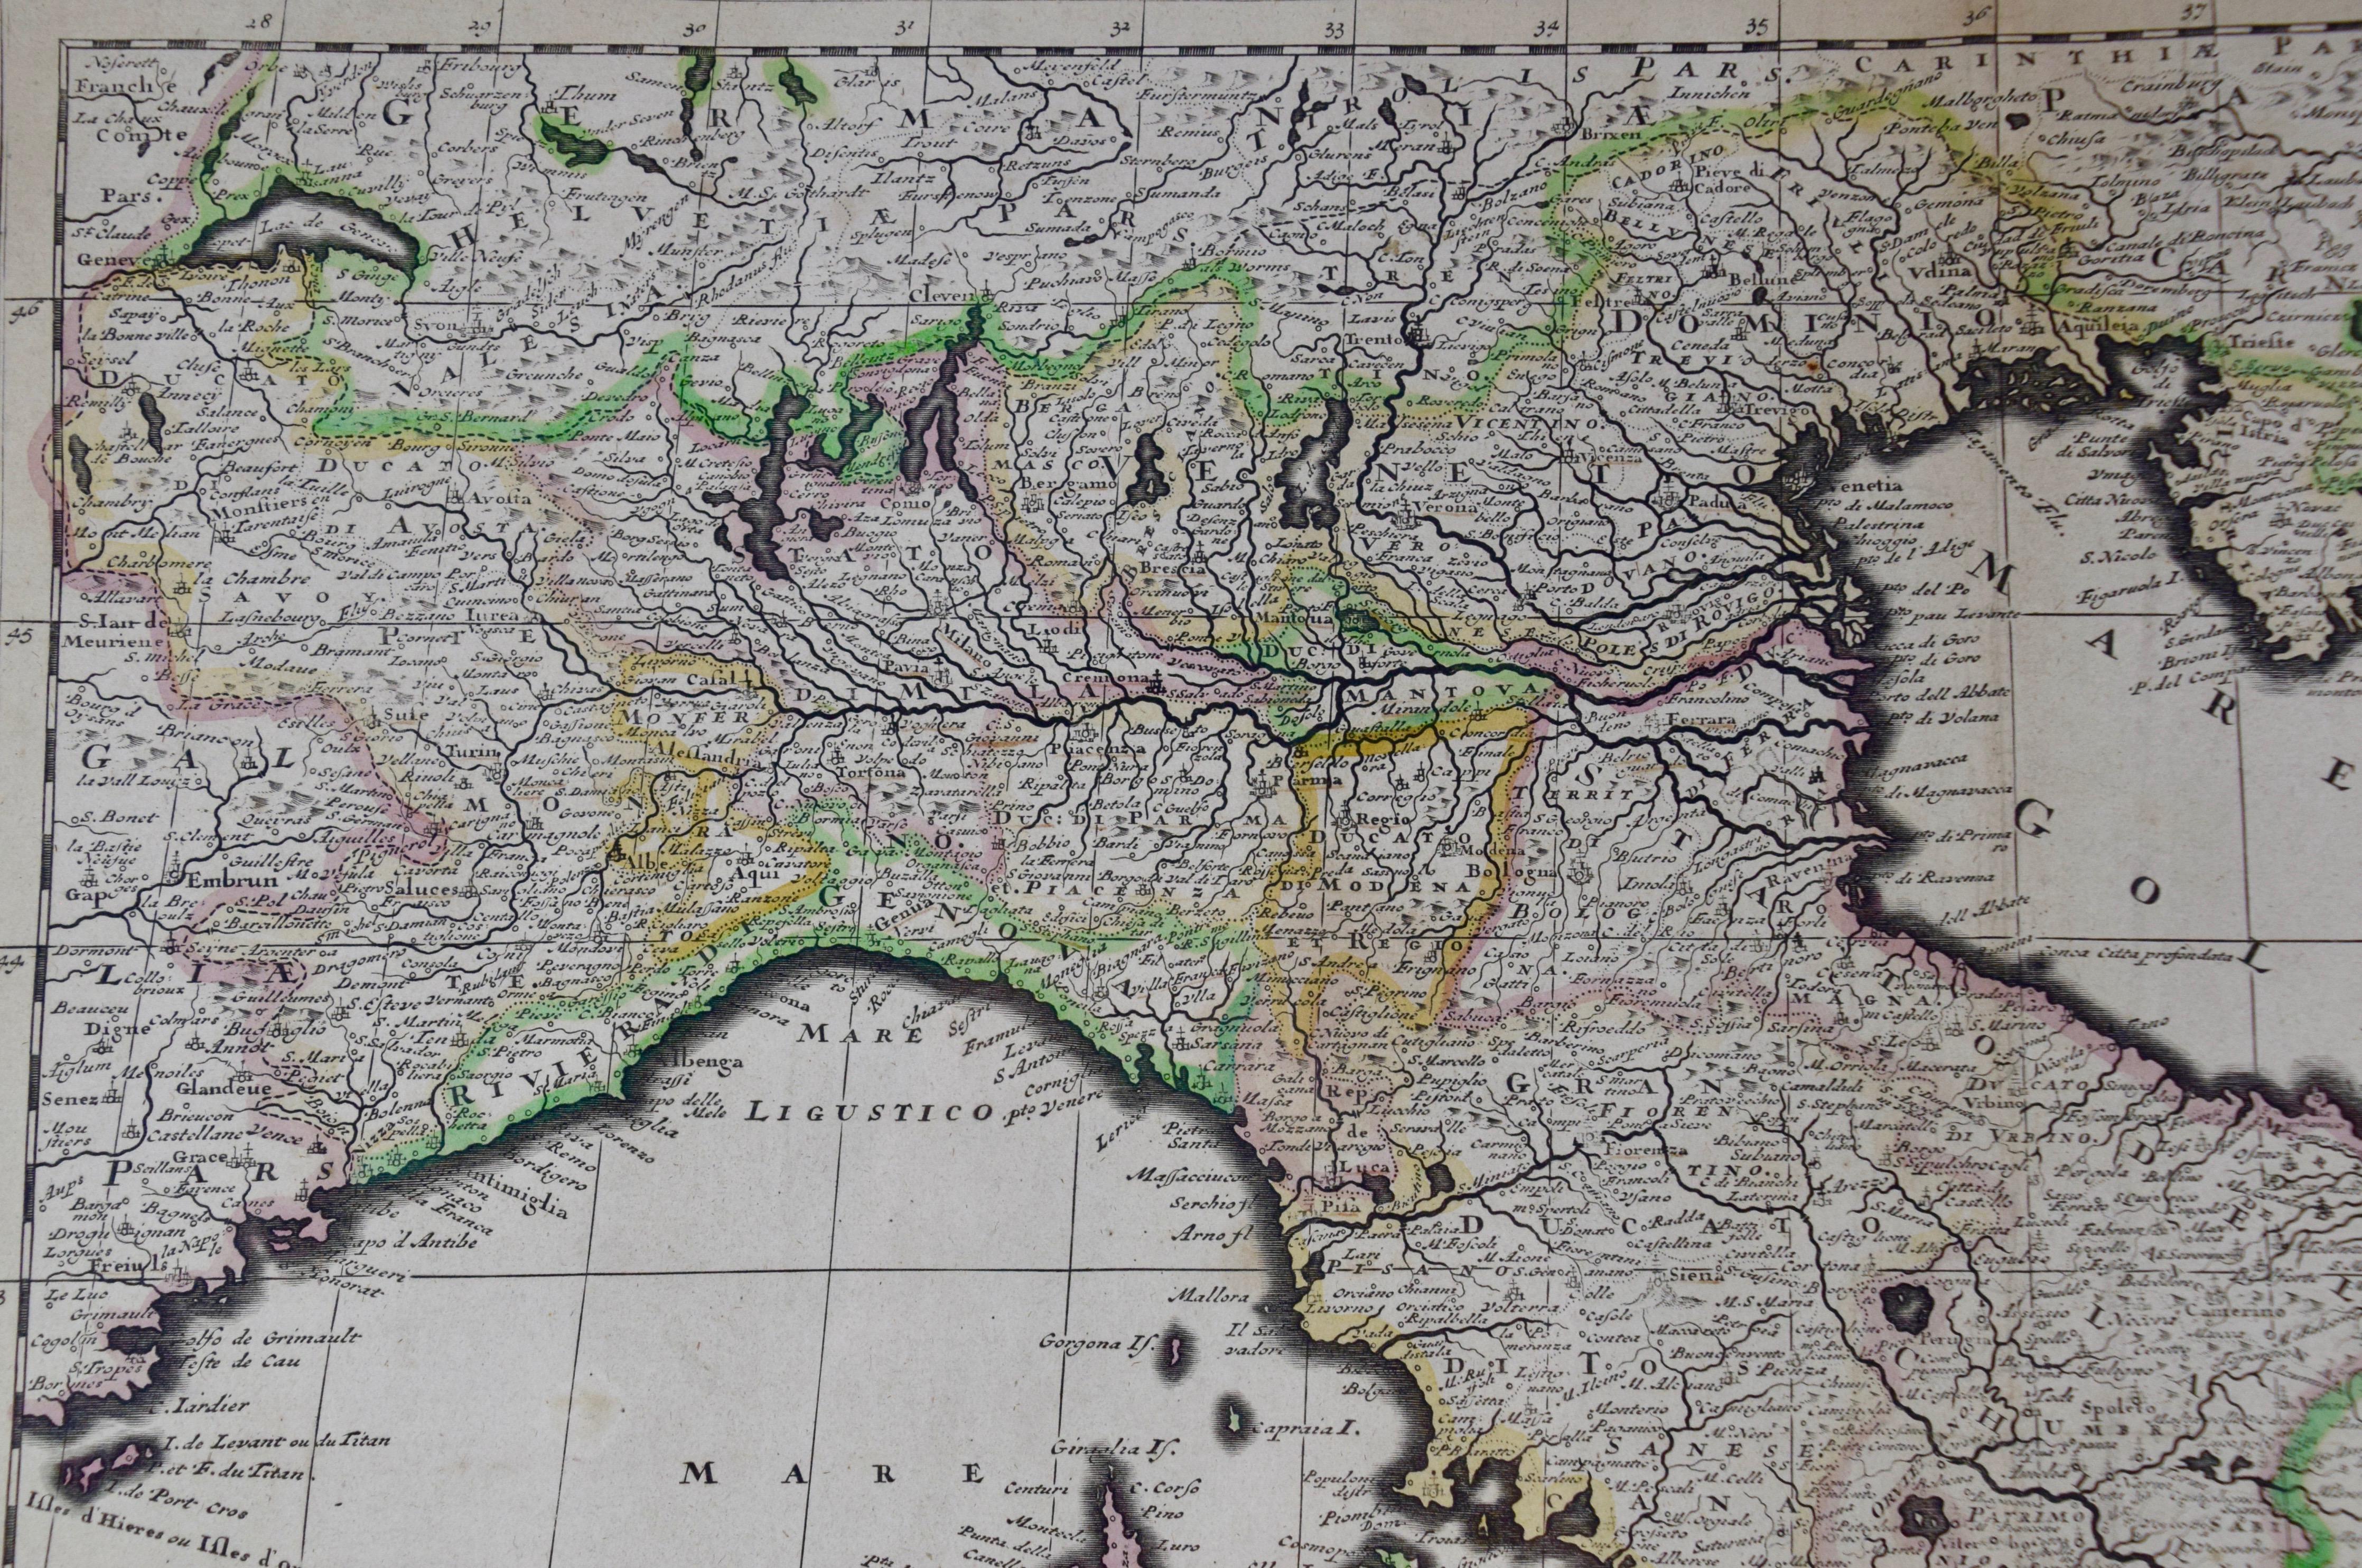 Néerlandais Italie, Sicile, Sardaigne, Corse et côte dalmate : Une carte hollandaise du 17e siècle en vente